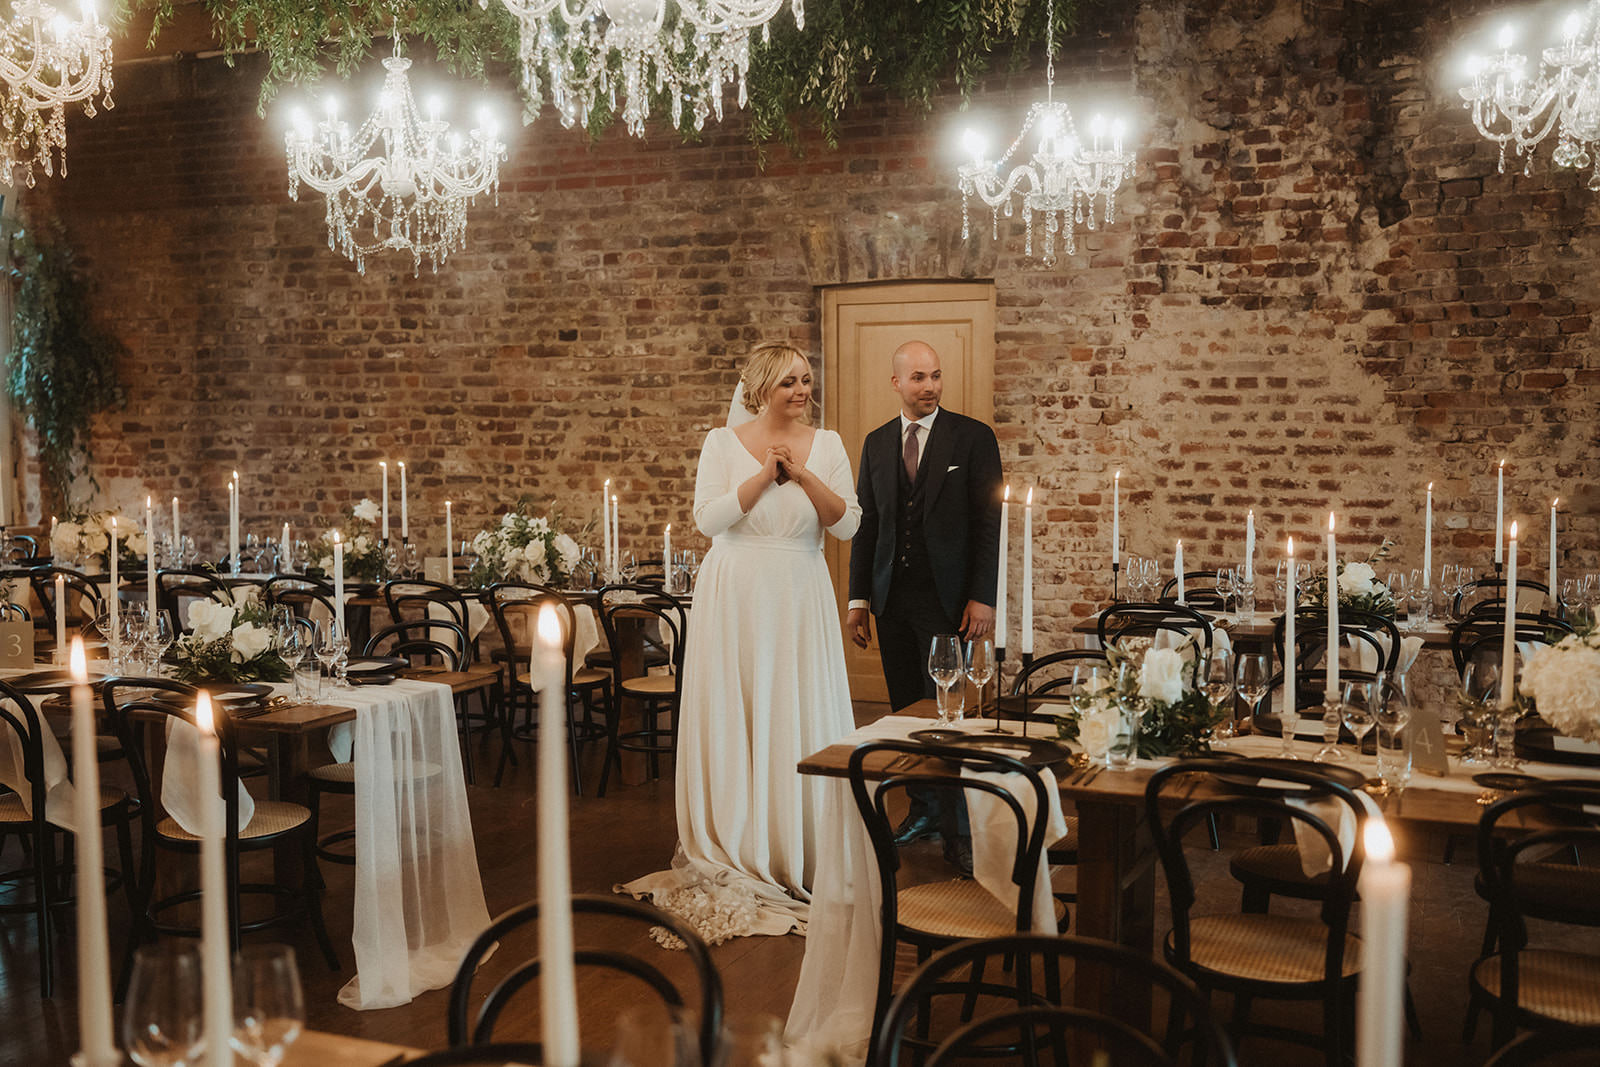 das Brautpaar sieht zum ersten Mal die hübsch dekorierten Tische im Festsaal | Hochzeitsplanung: Sagt Ja